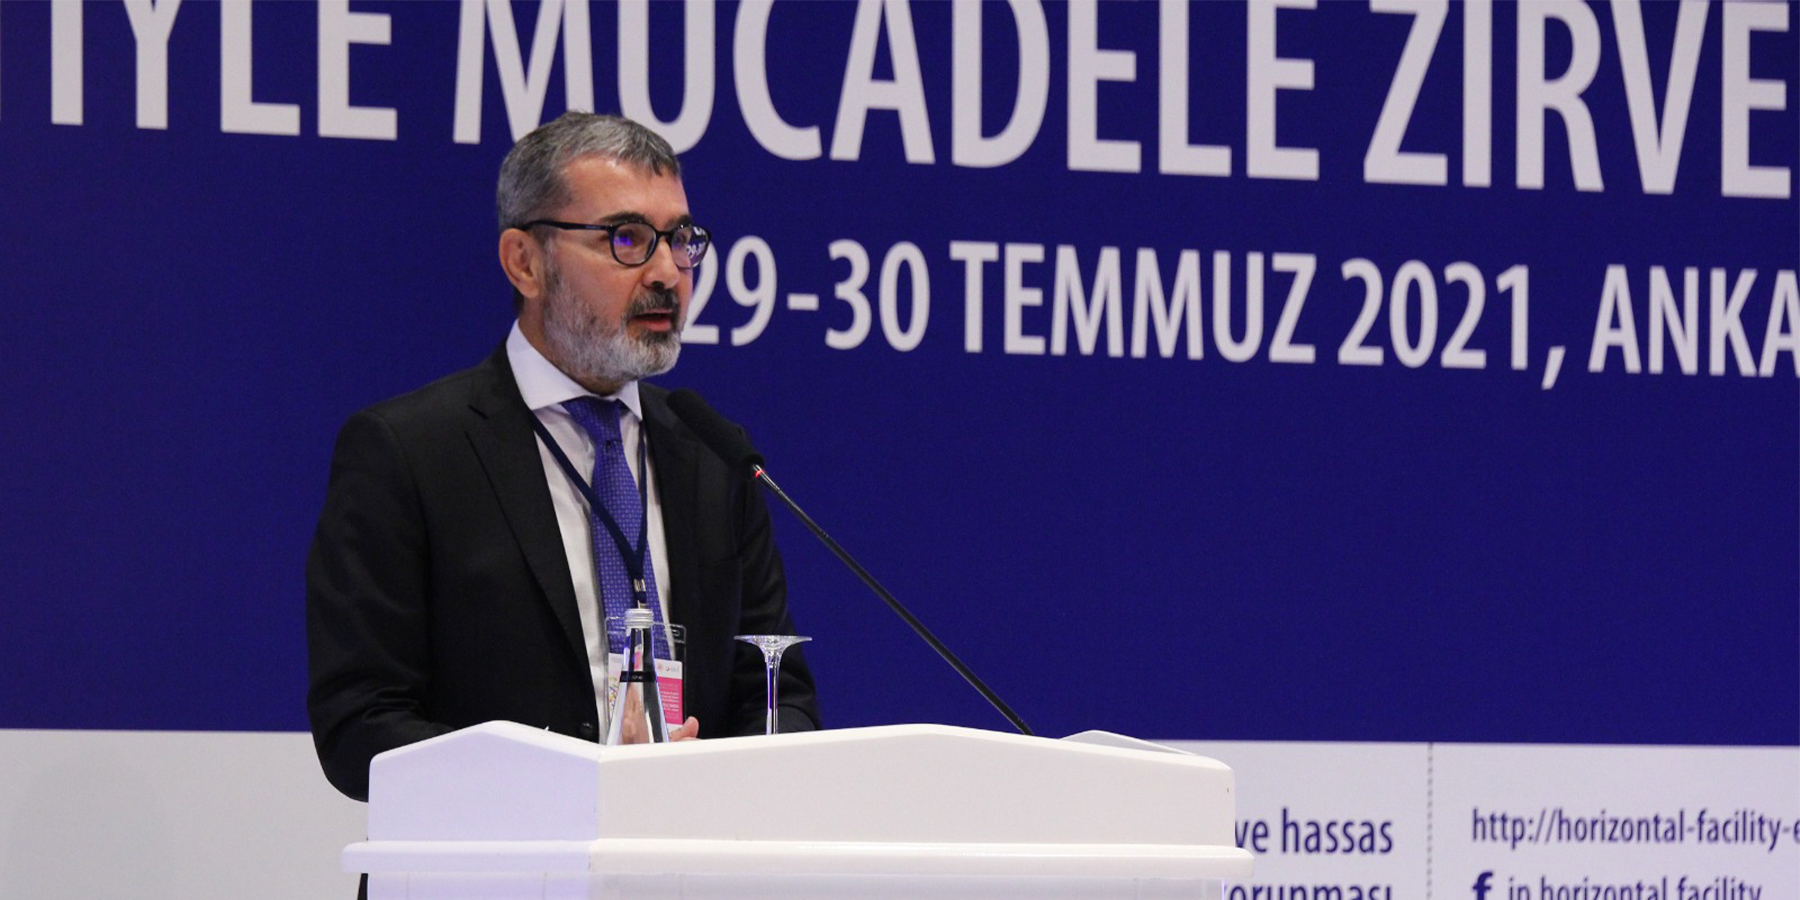 Başkan Prof. Dr. Muharrem Kılıç, İnsan Ticaretiyle Mücadele Zirvesi’ne Katıldı